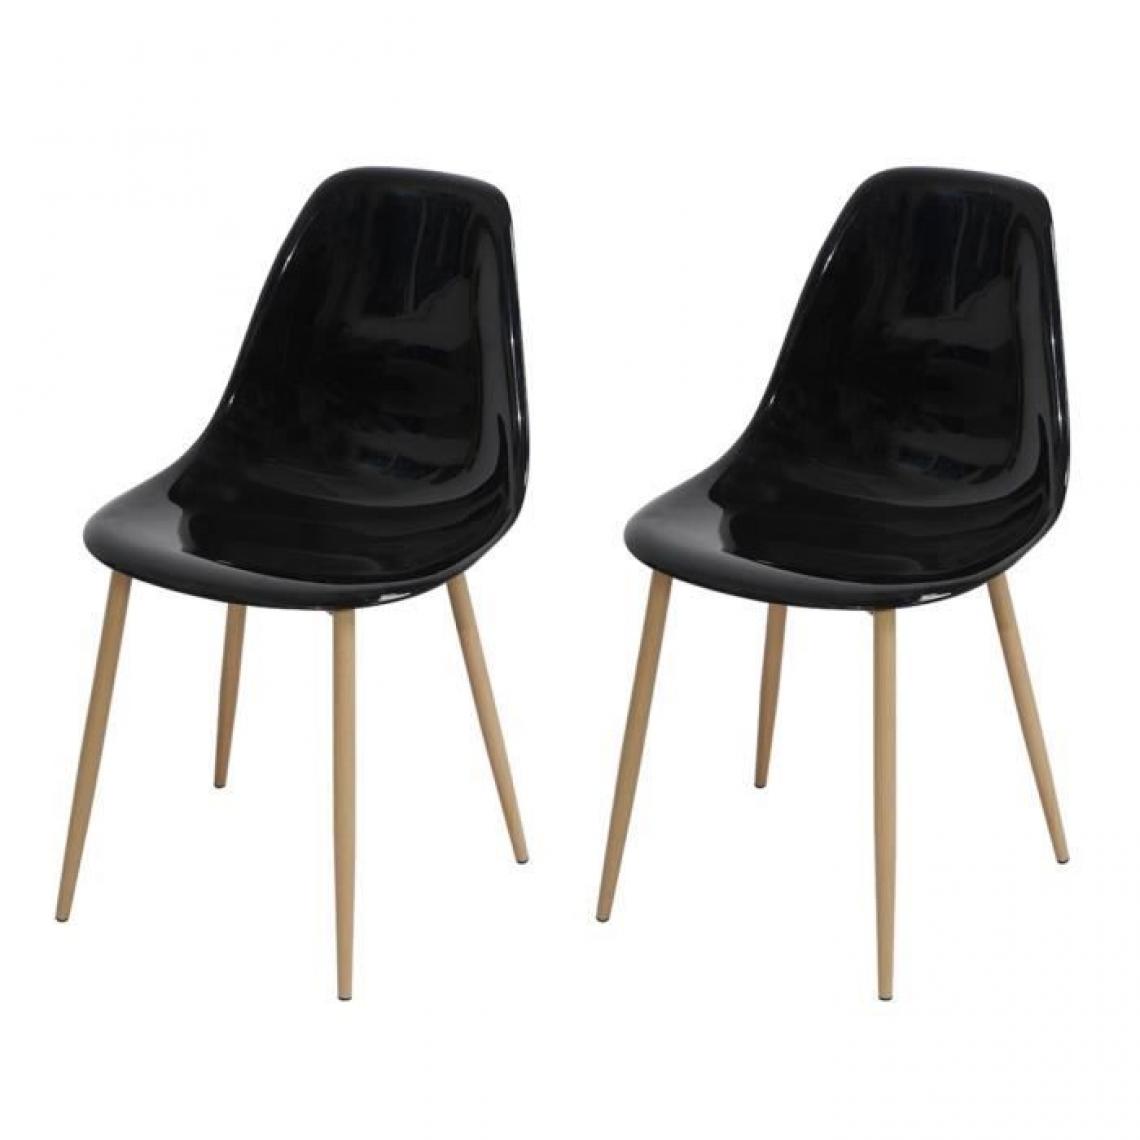 Cstore - Lot de 2 chaises cristal transparent noir - L 47 x P 54 x H 84 cm - CLODY - Chaises